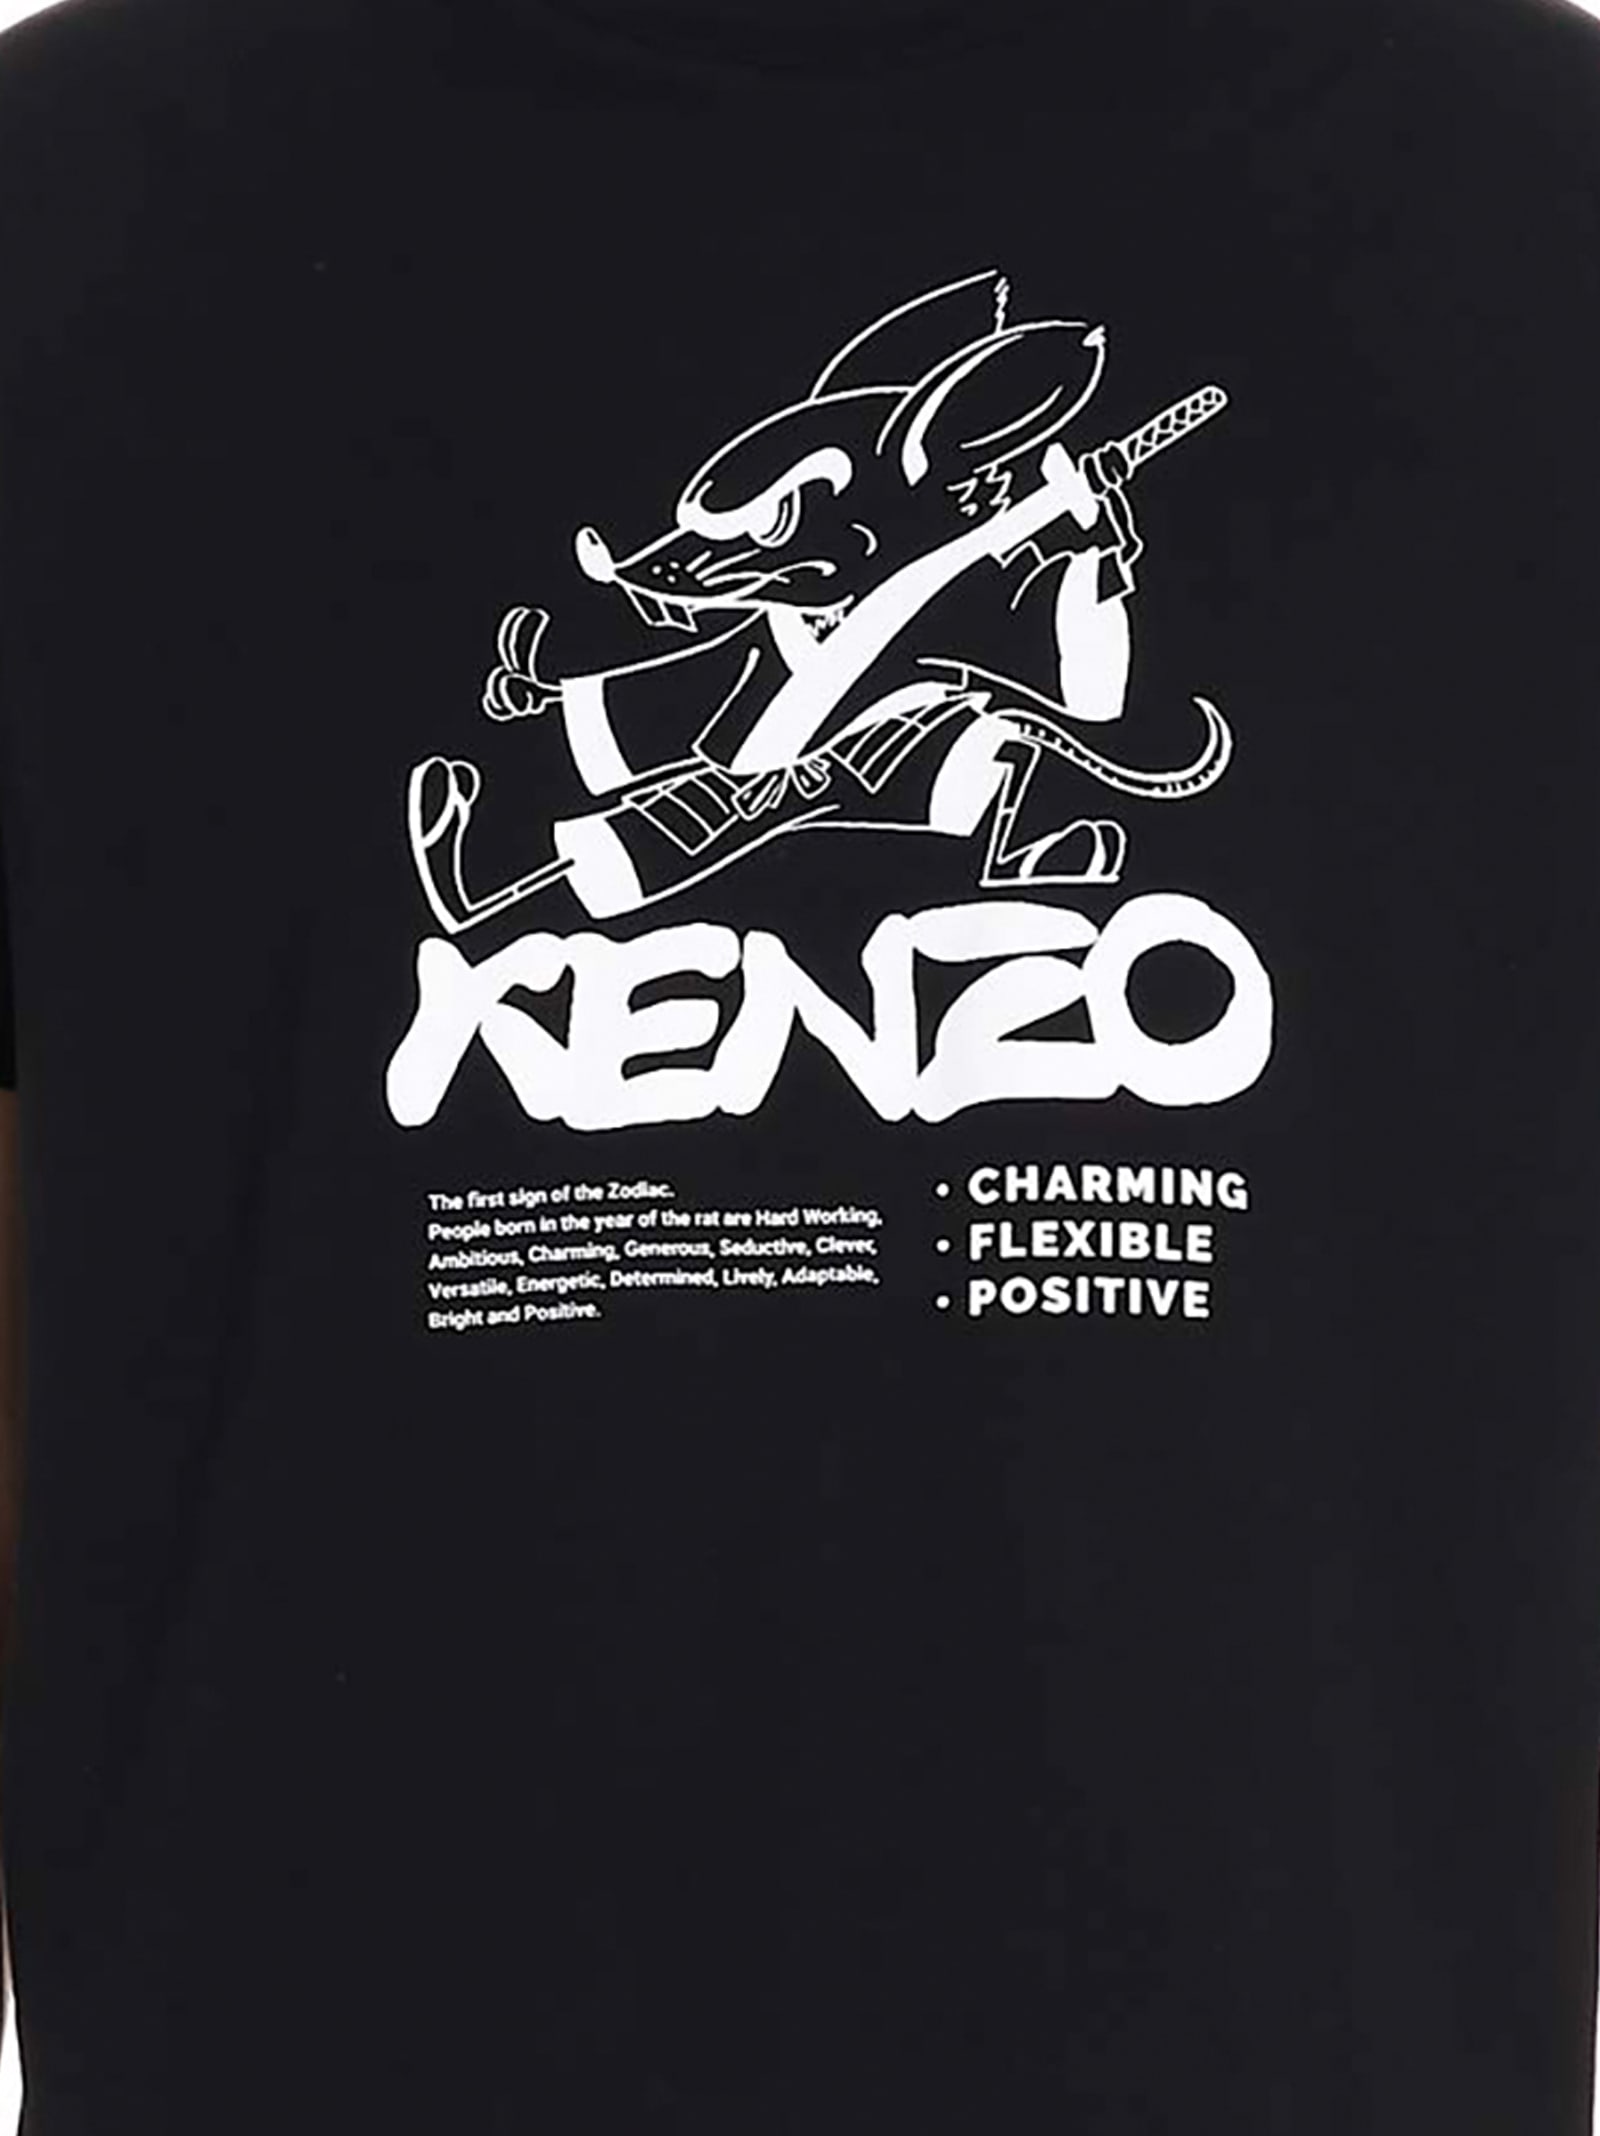 kenzo chinese new year t shirt